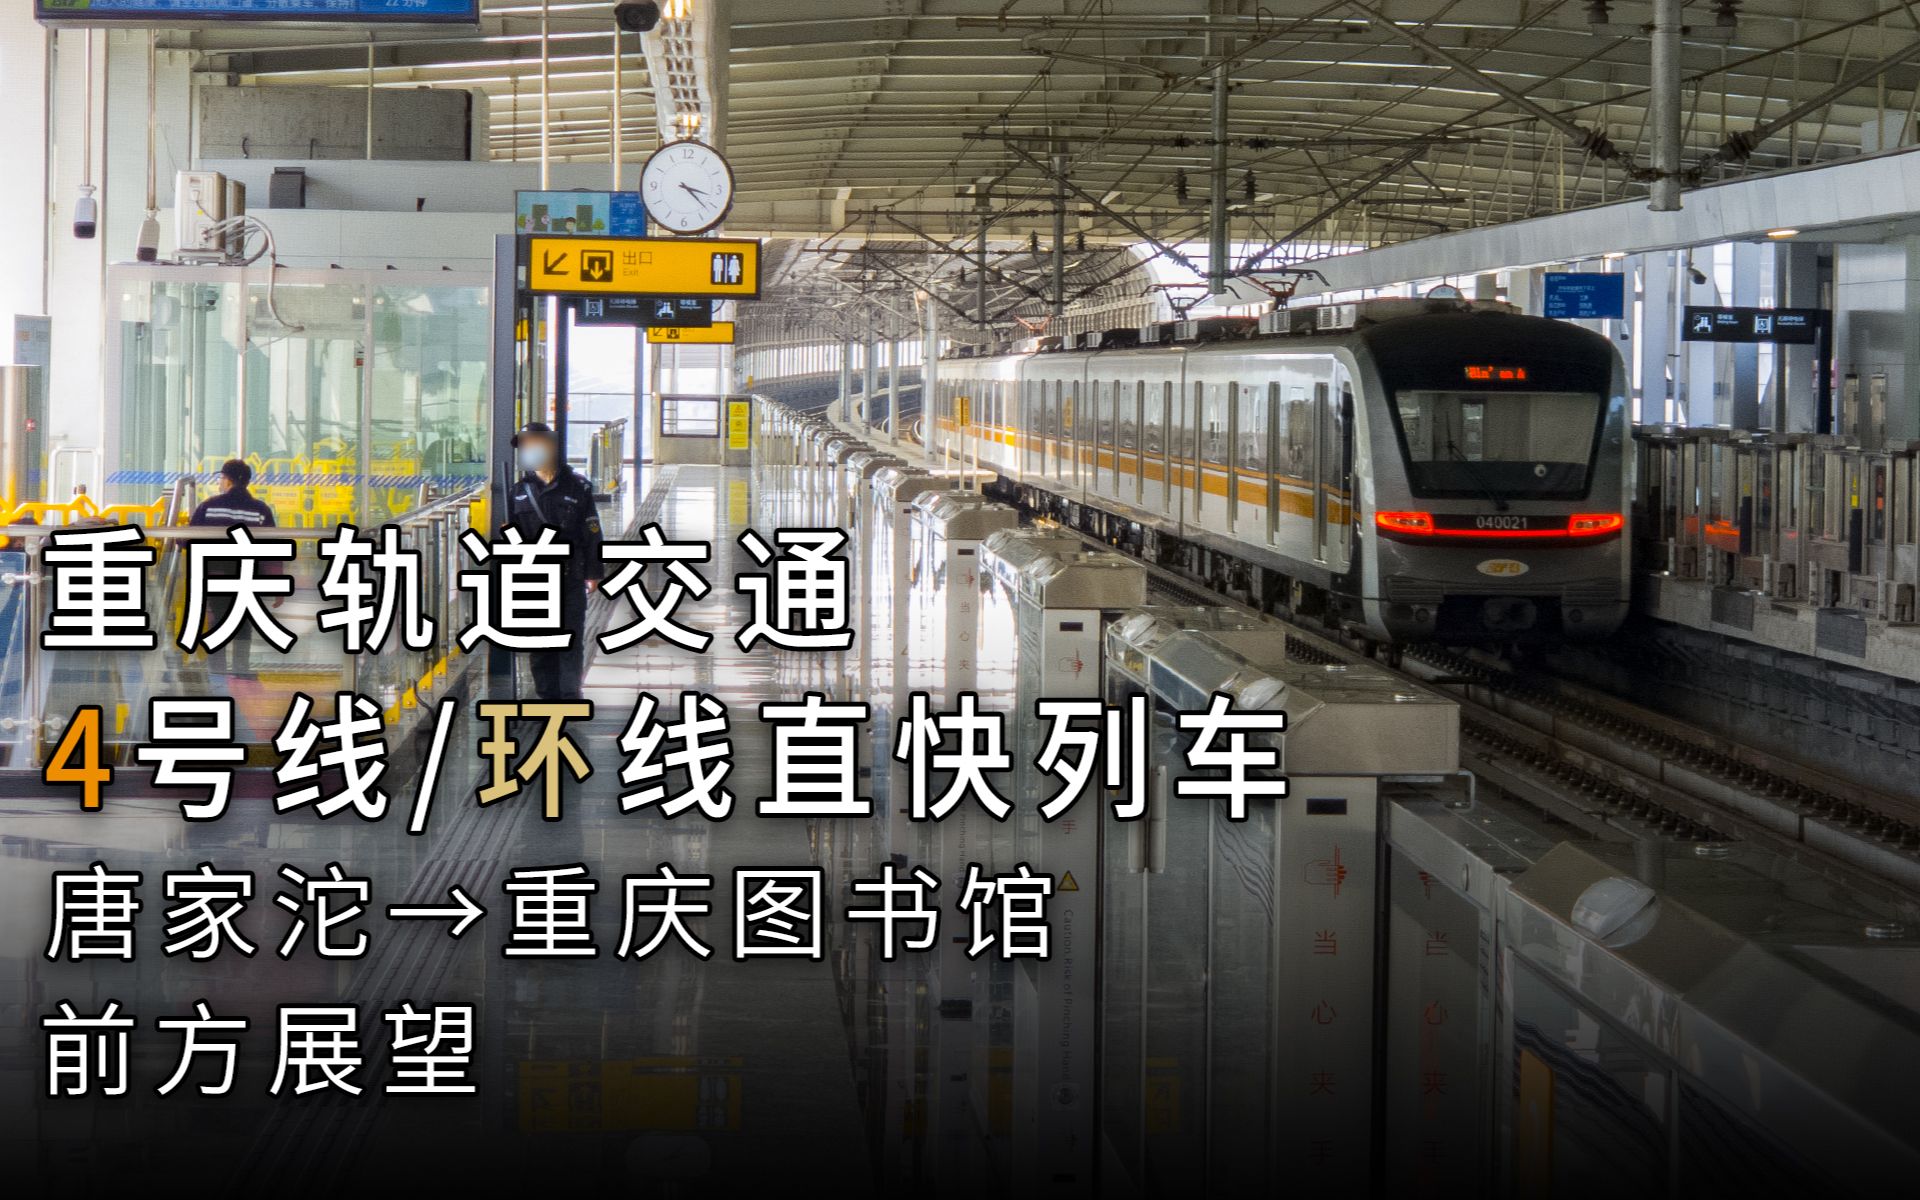 【重庆轨道交通】4号线→环线直达快速列车 唐家沱→重庆图书馆 第一